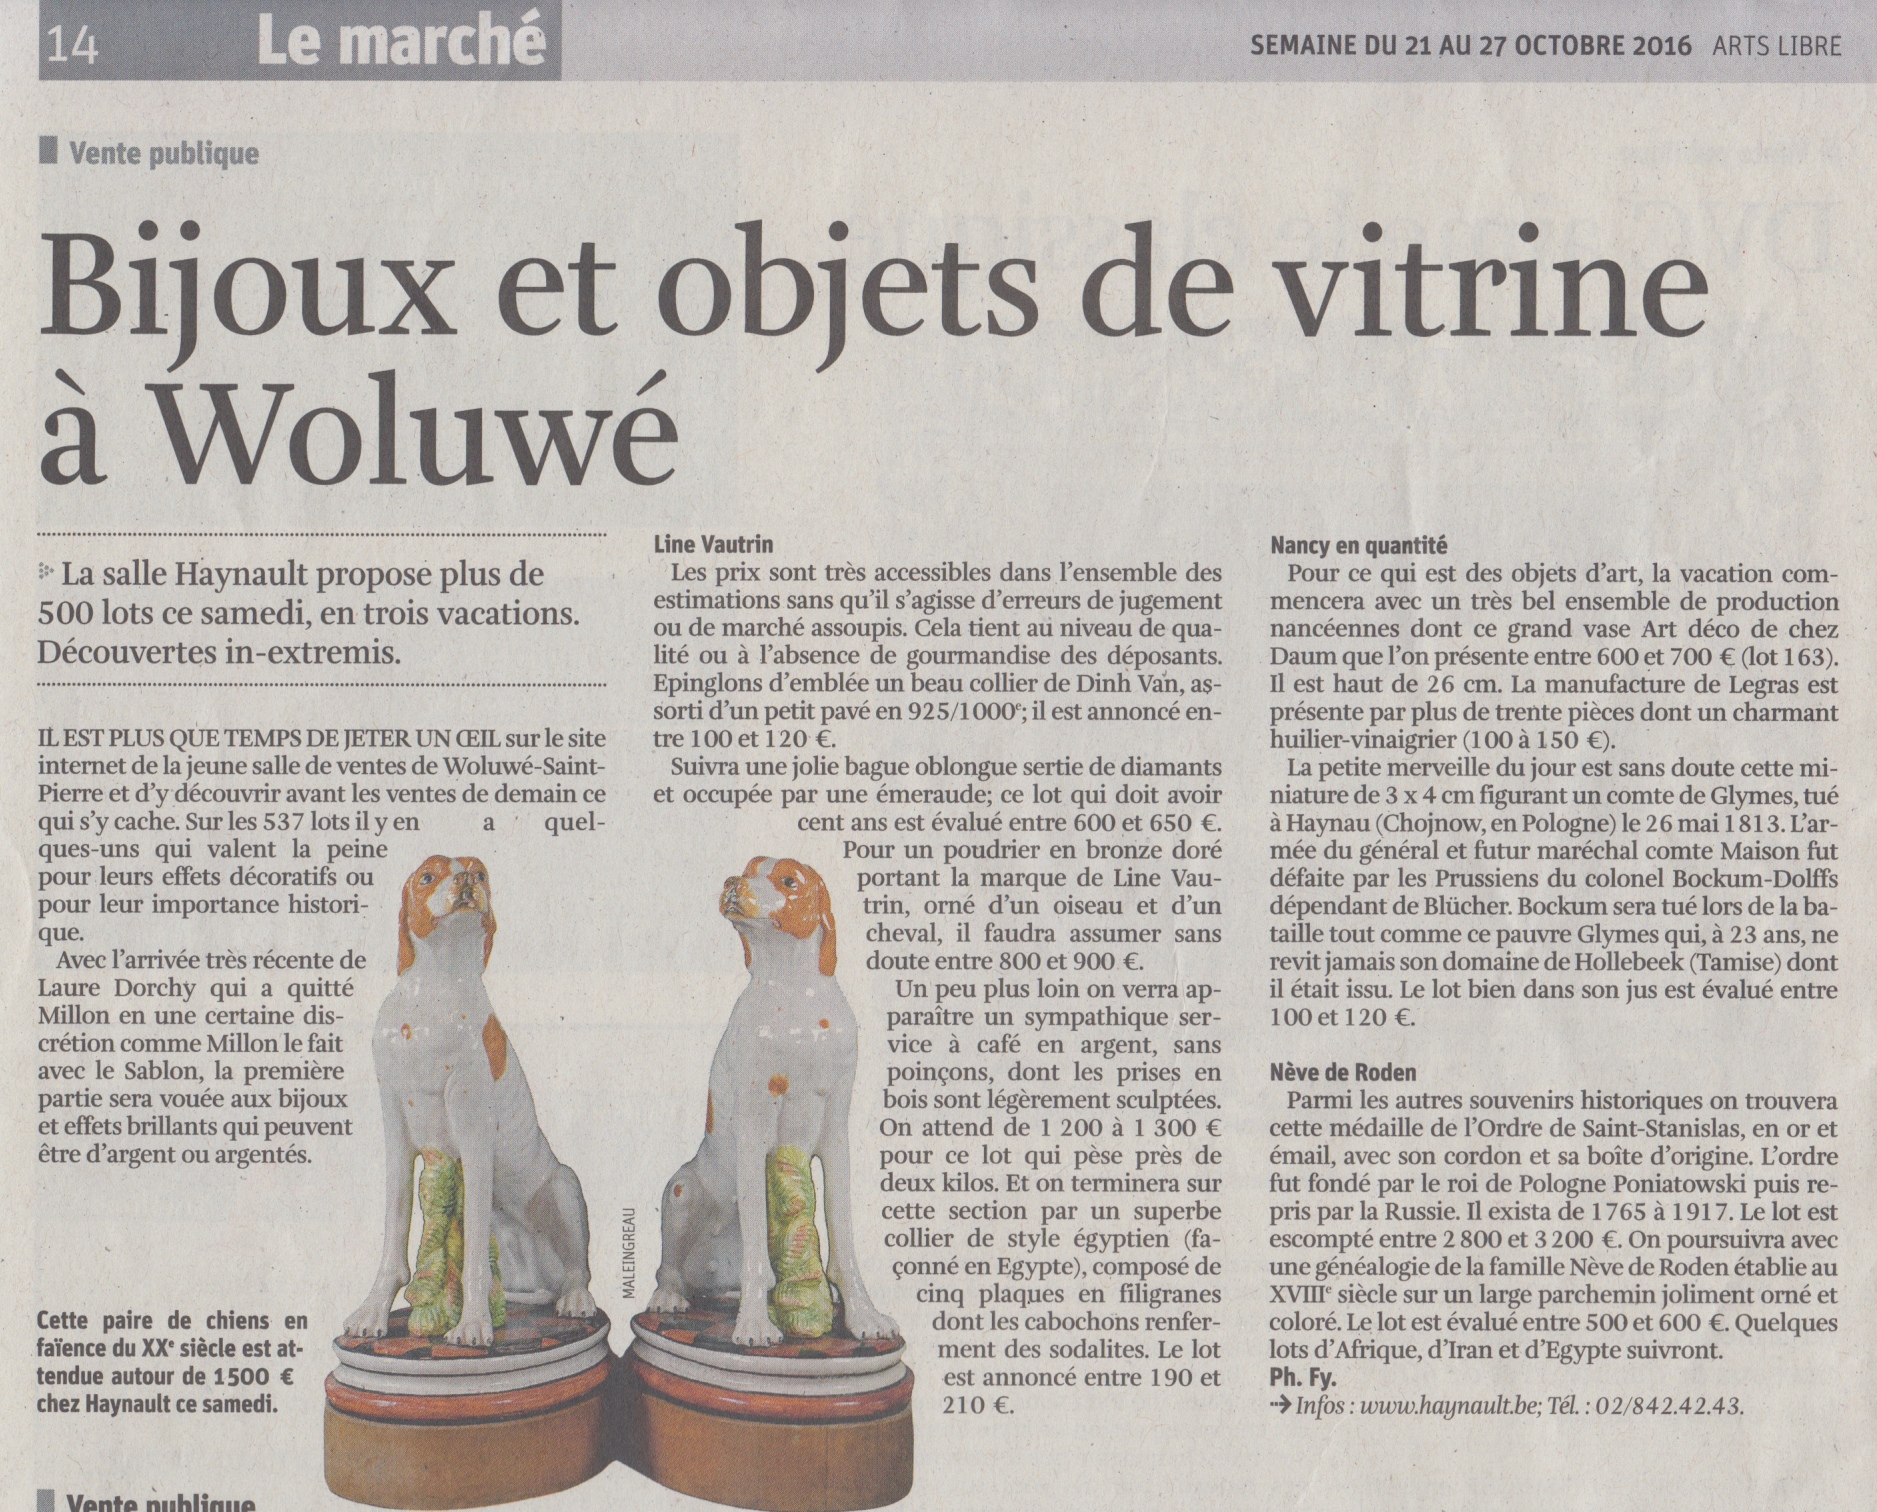 Bijoux et objets de vitrine à Woluwé - La Libre Belgique - Friday, October 21st 2016